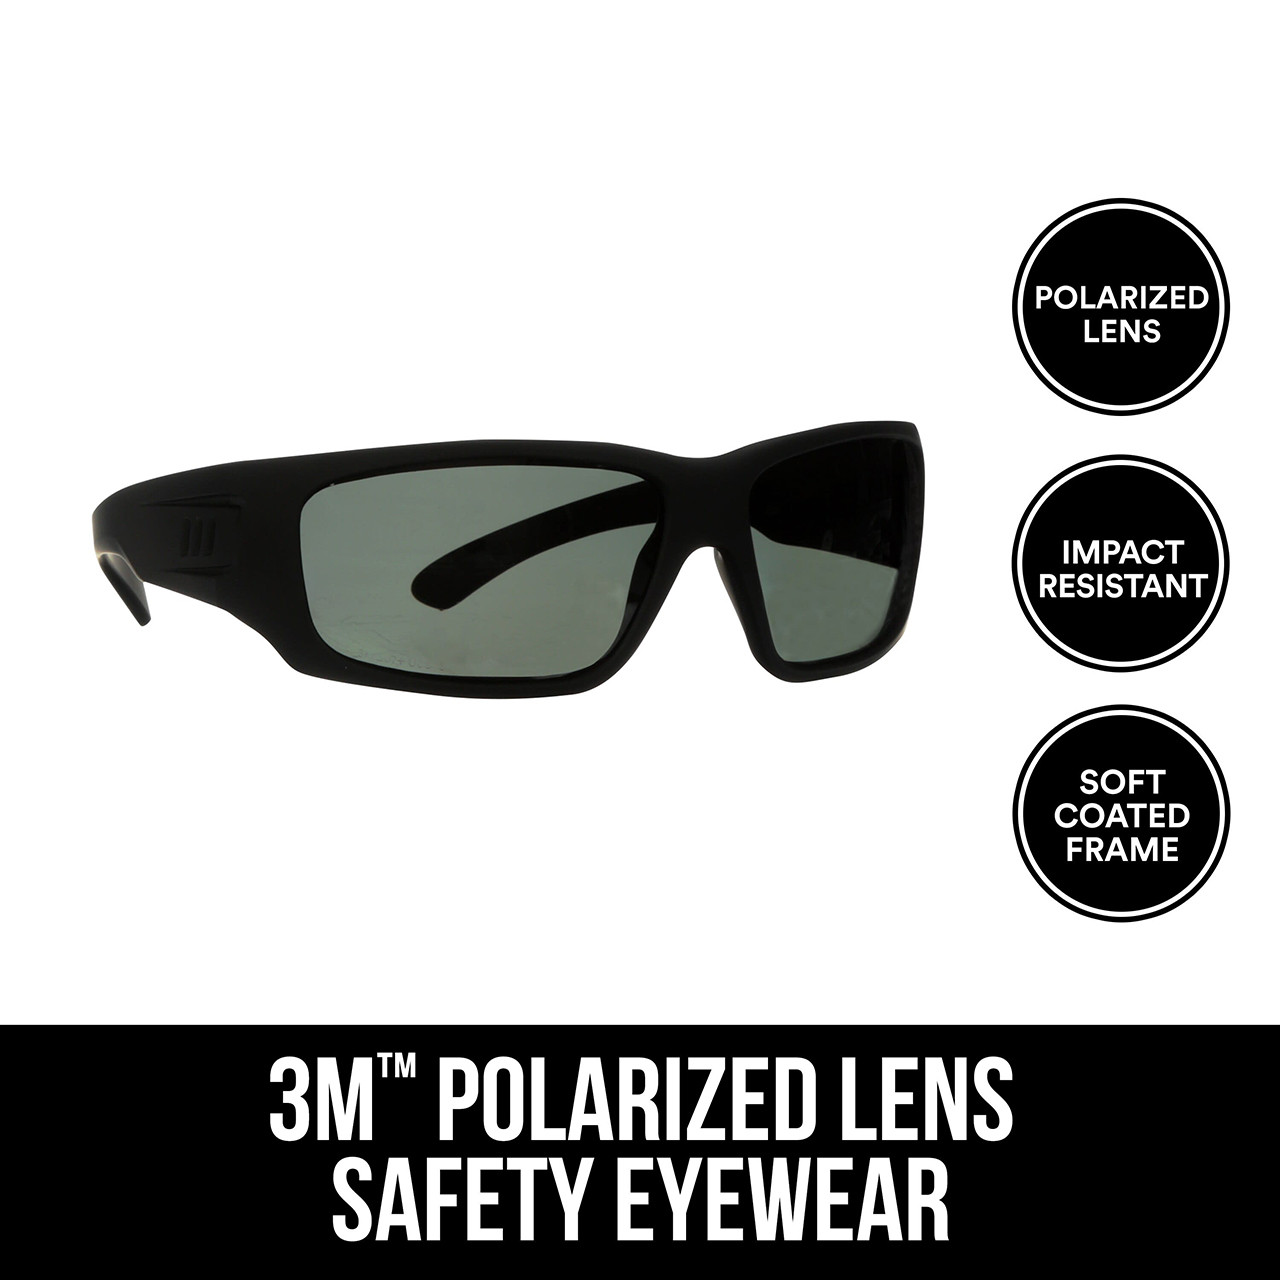 3M Polarized Safety Eyewear